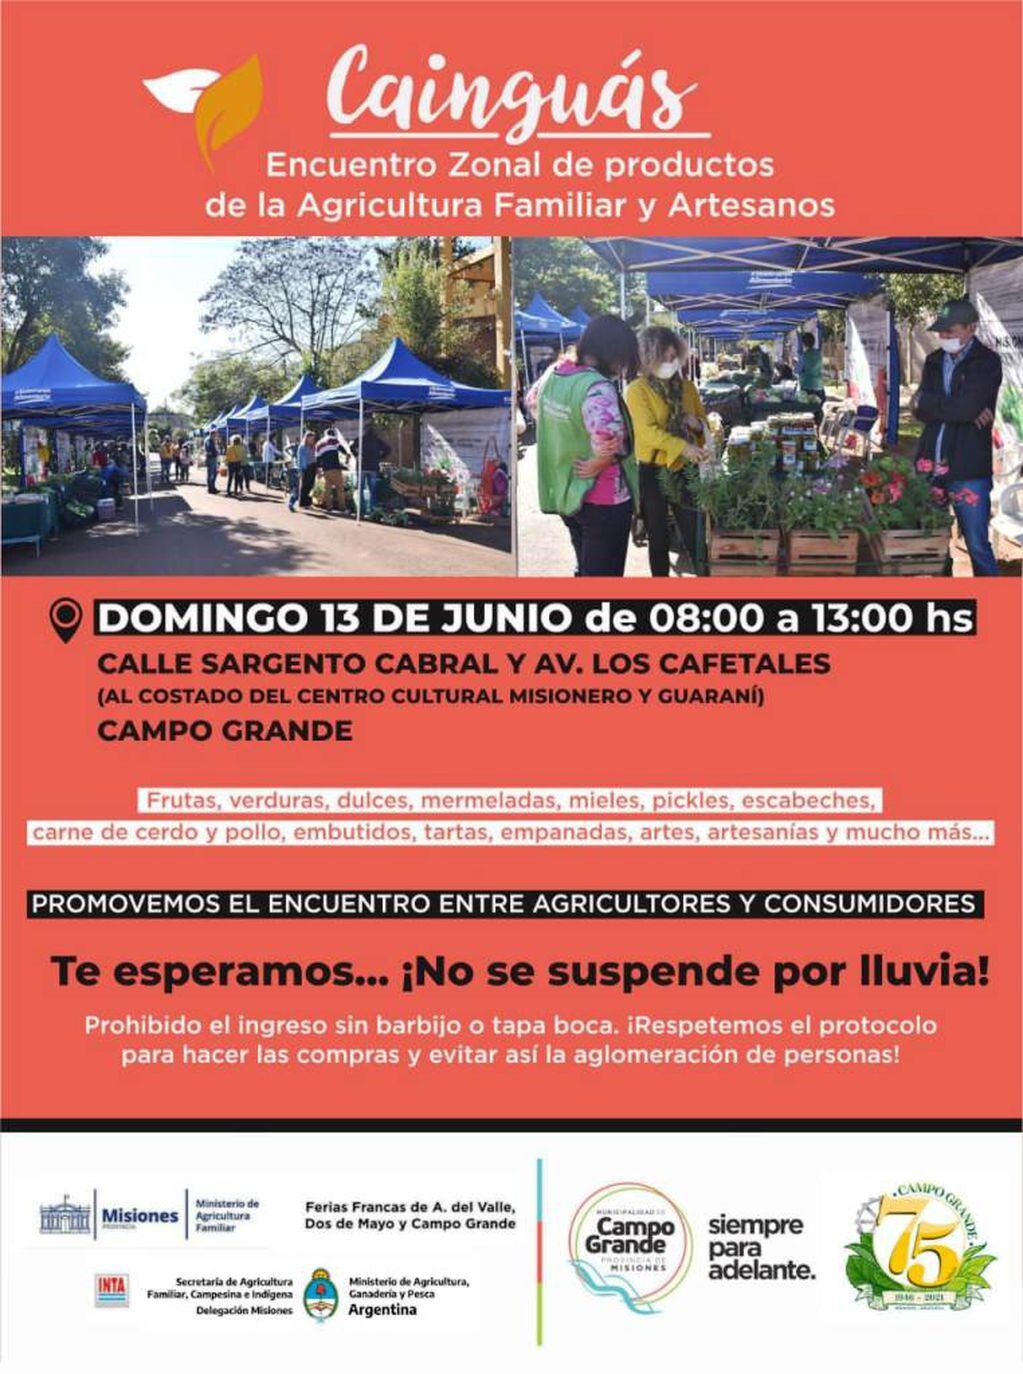 Campo Grande será sede del encuentro zonal de Ferias Francas y productos de la agricultura familiar